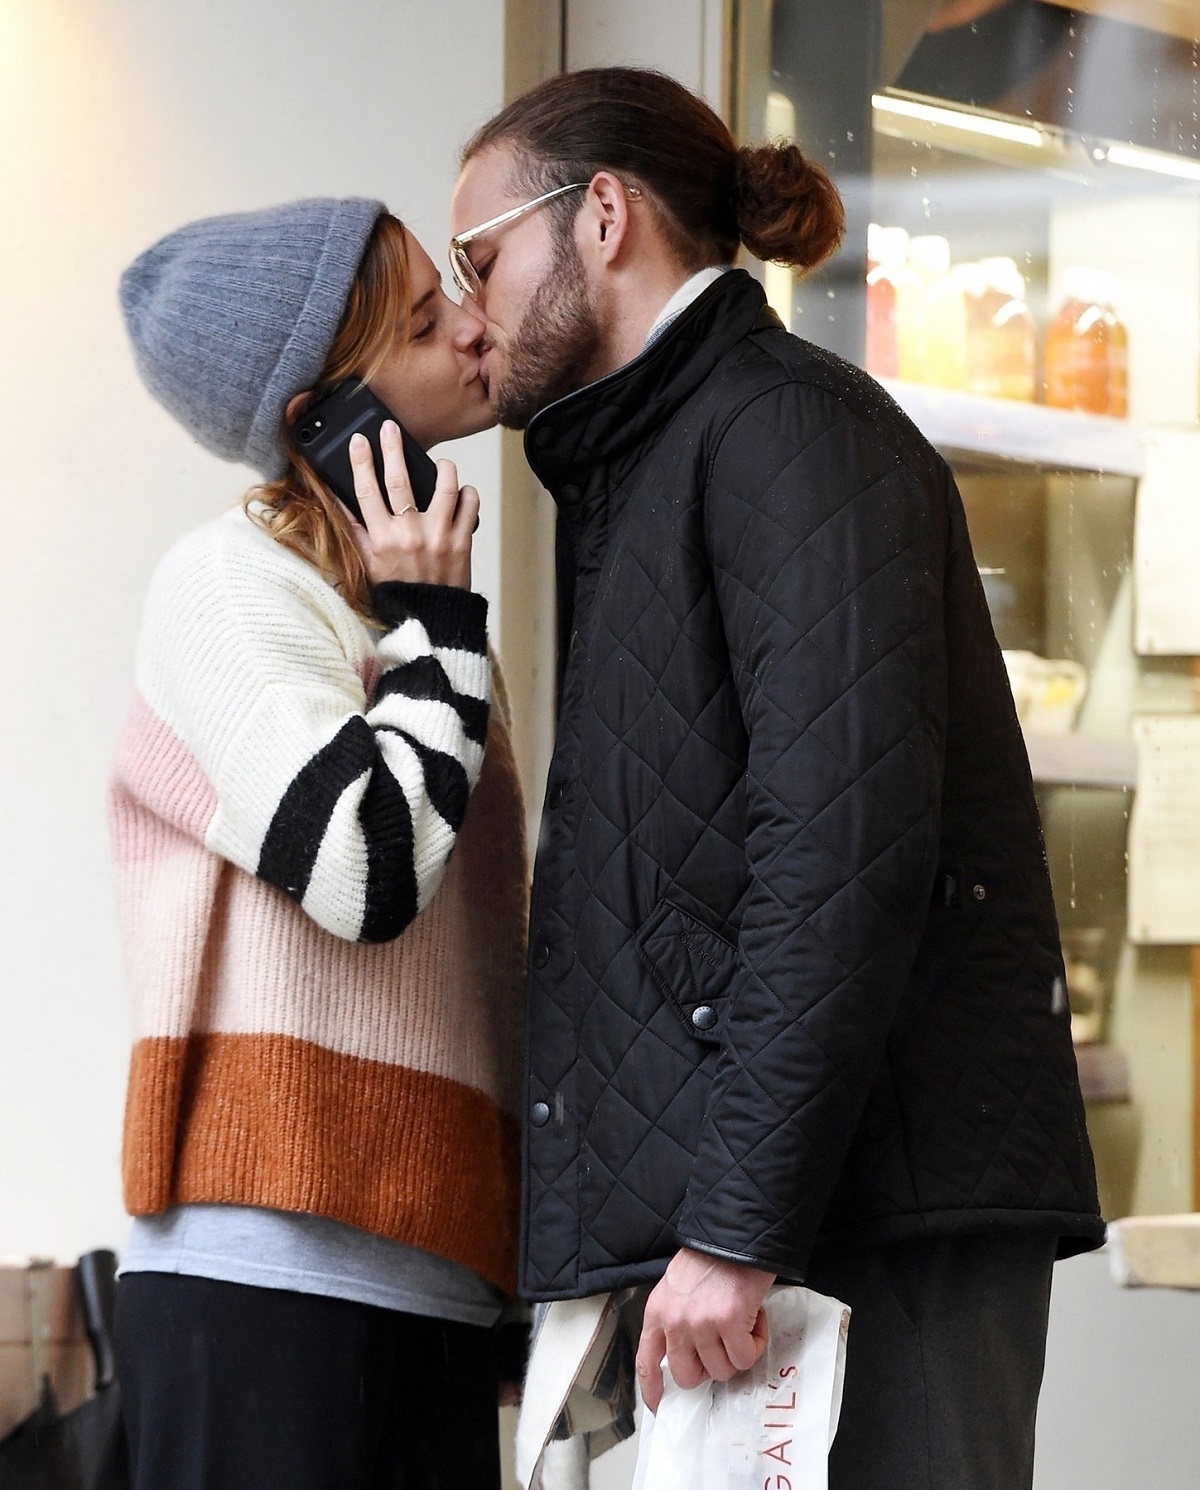 Emma Watson în timp ce poartă un pulover în dungi și o căciulă pe cap, sărutându-l pe iubitul său, Leo Robinton